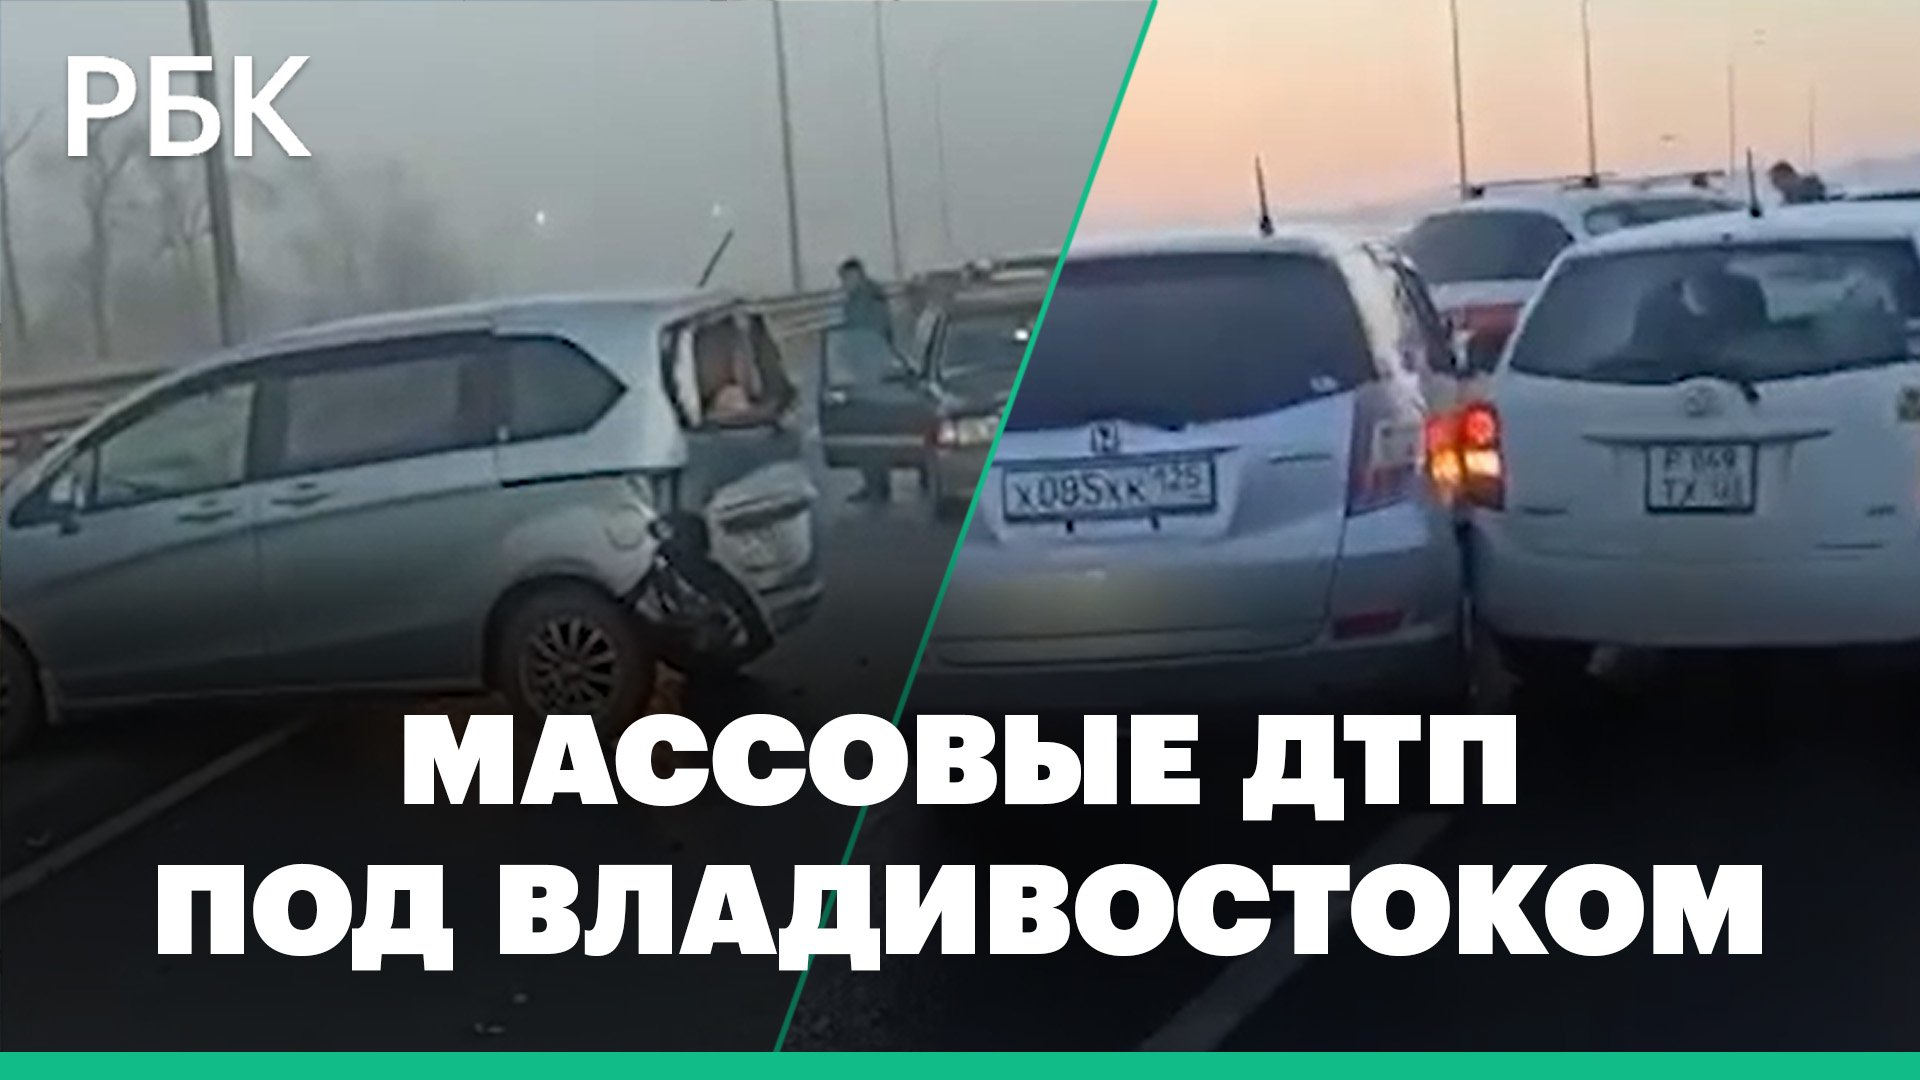 Десятки автомобилей столкнулись на въезде во Владивосток. Есть пострадавшие. Видео очевидцев